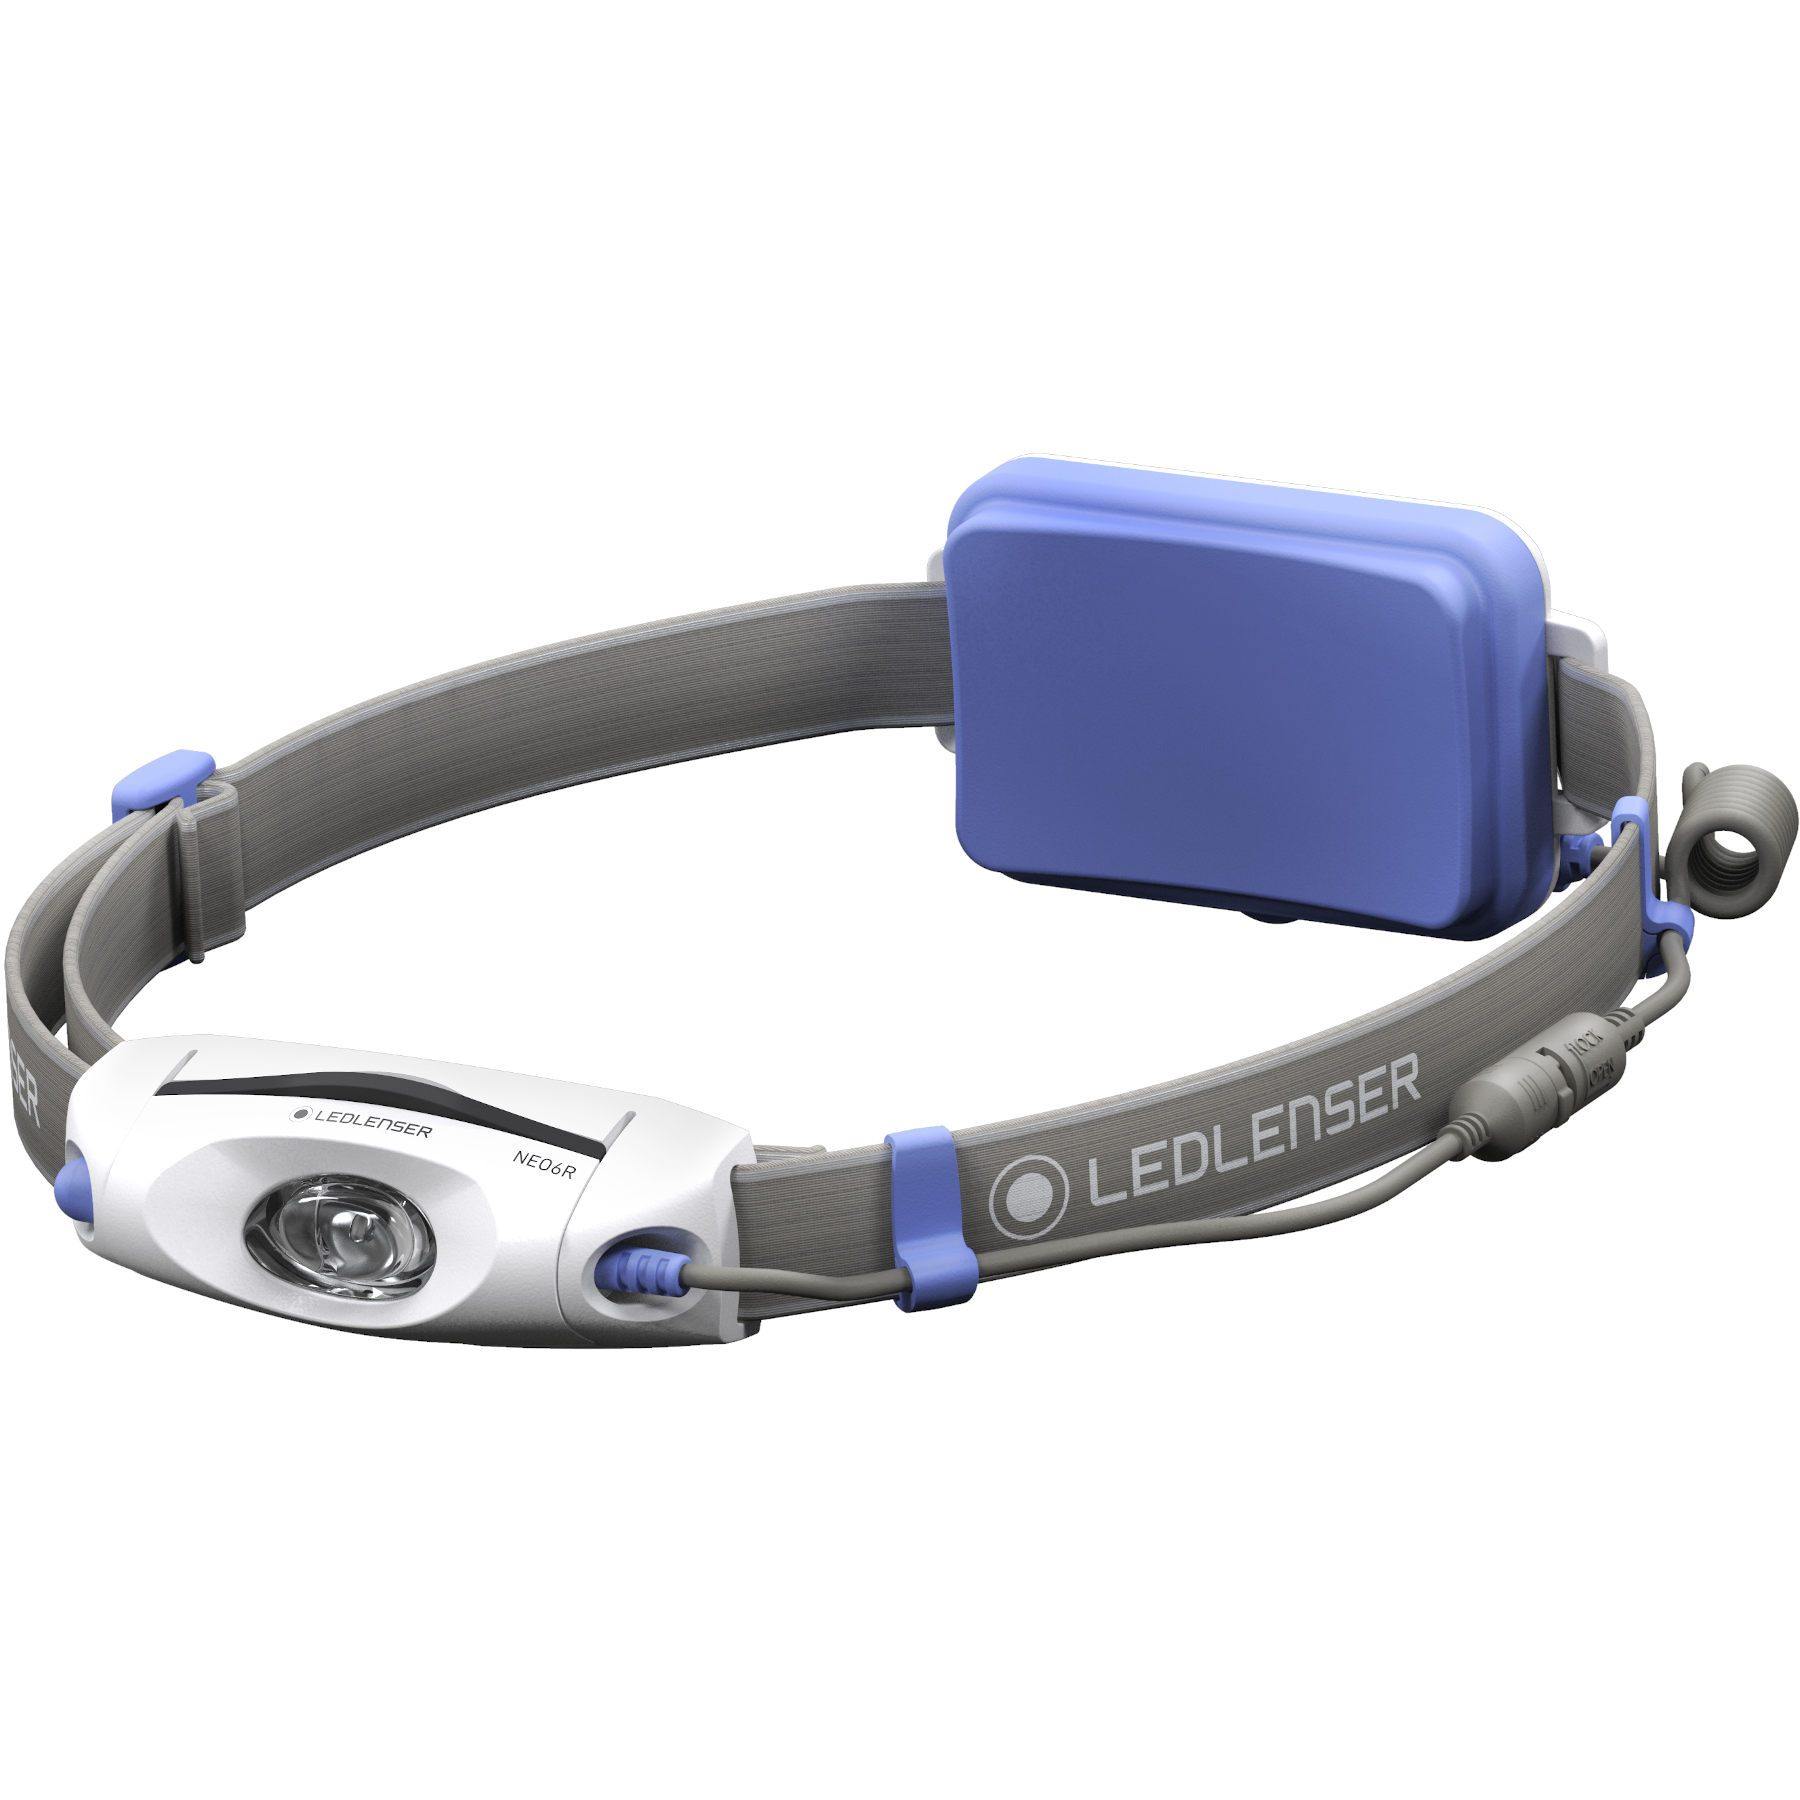 Ledlenser NEO6R Blue with Buff Coolnet UV Gift Pack FOR HIM - Gosportcom